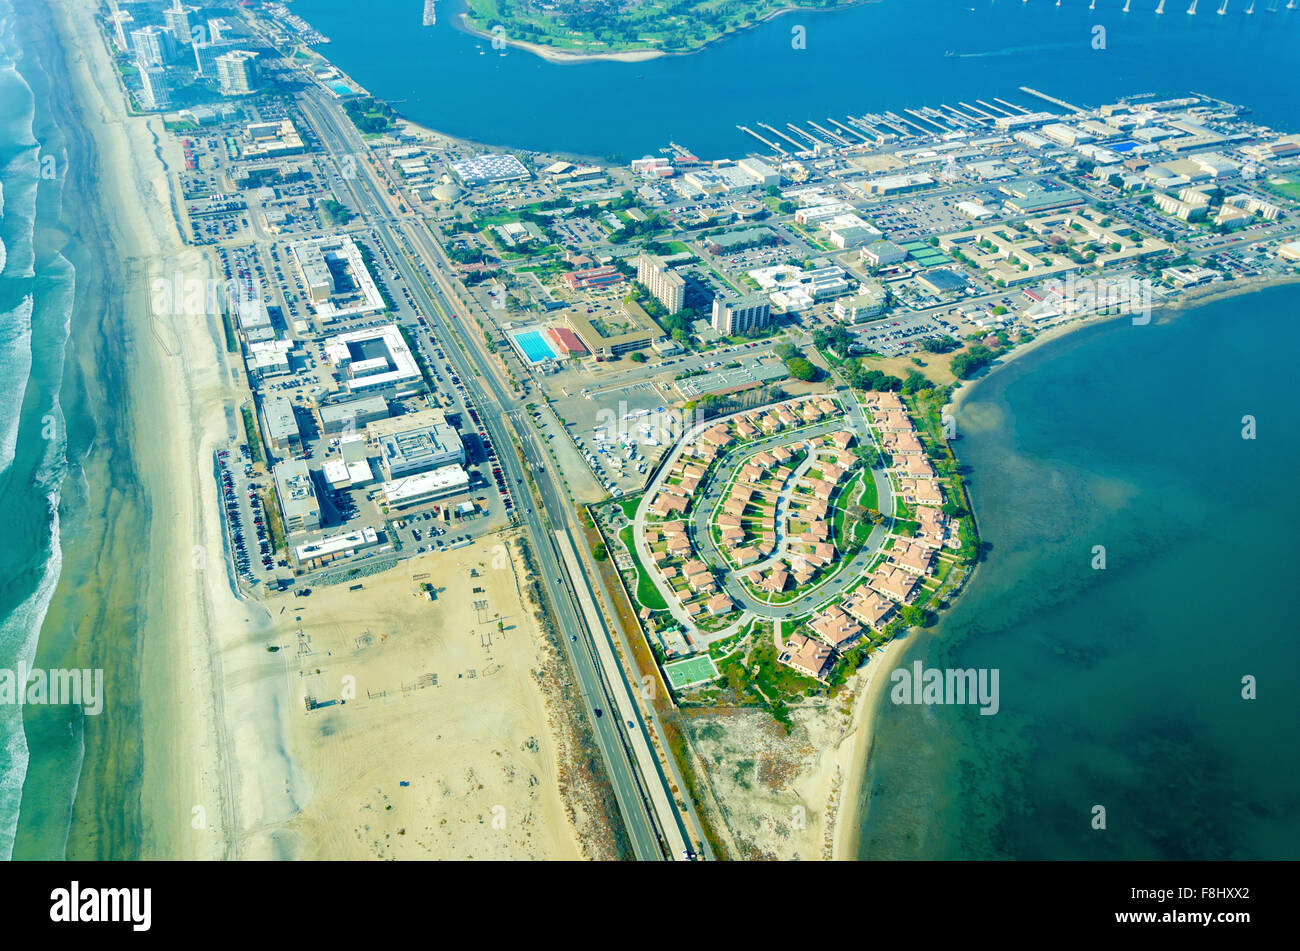 Vue aérienne de l'île Coronado dans la baie de San Diego, le Silver Strand et l'océan Pacifique en Californie du Sud, United Stat Banque D'Images